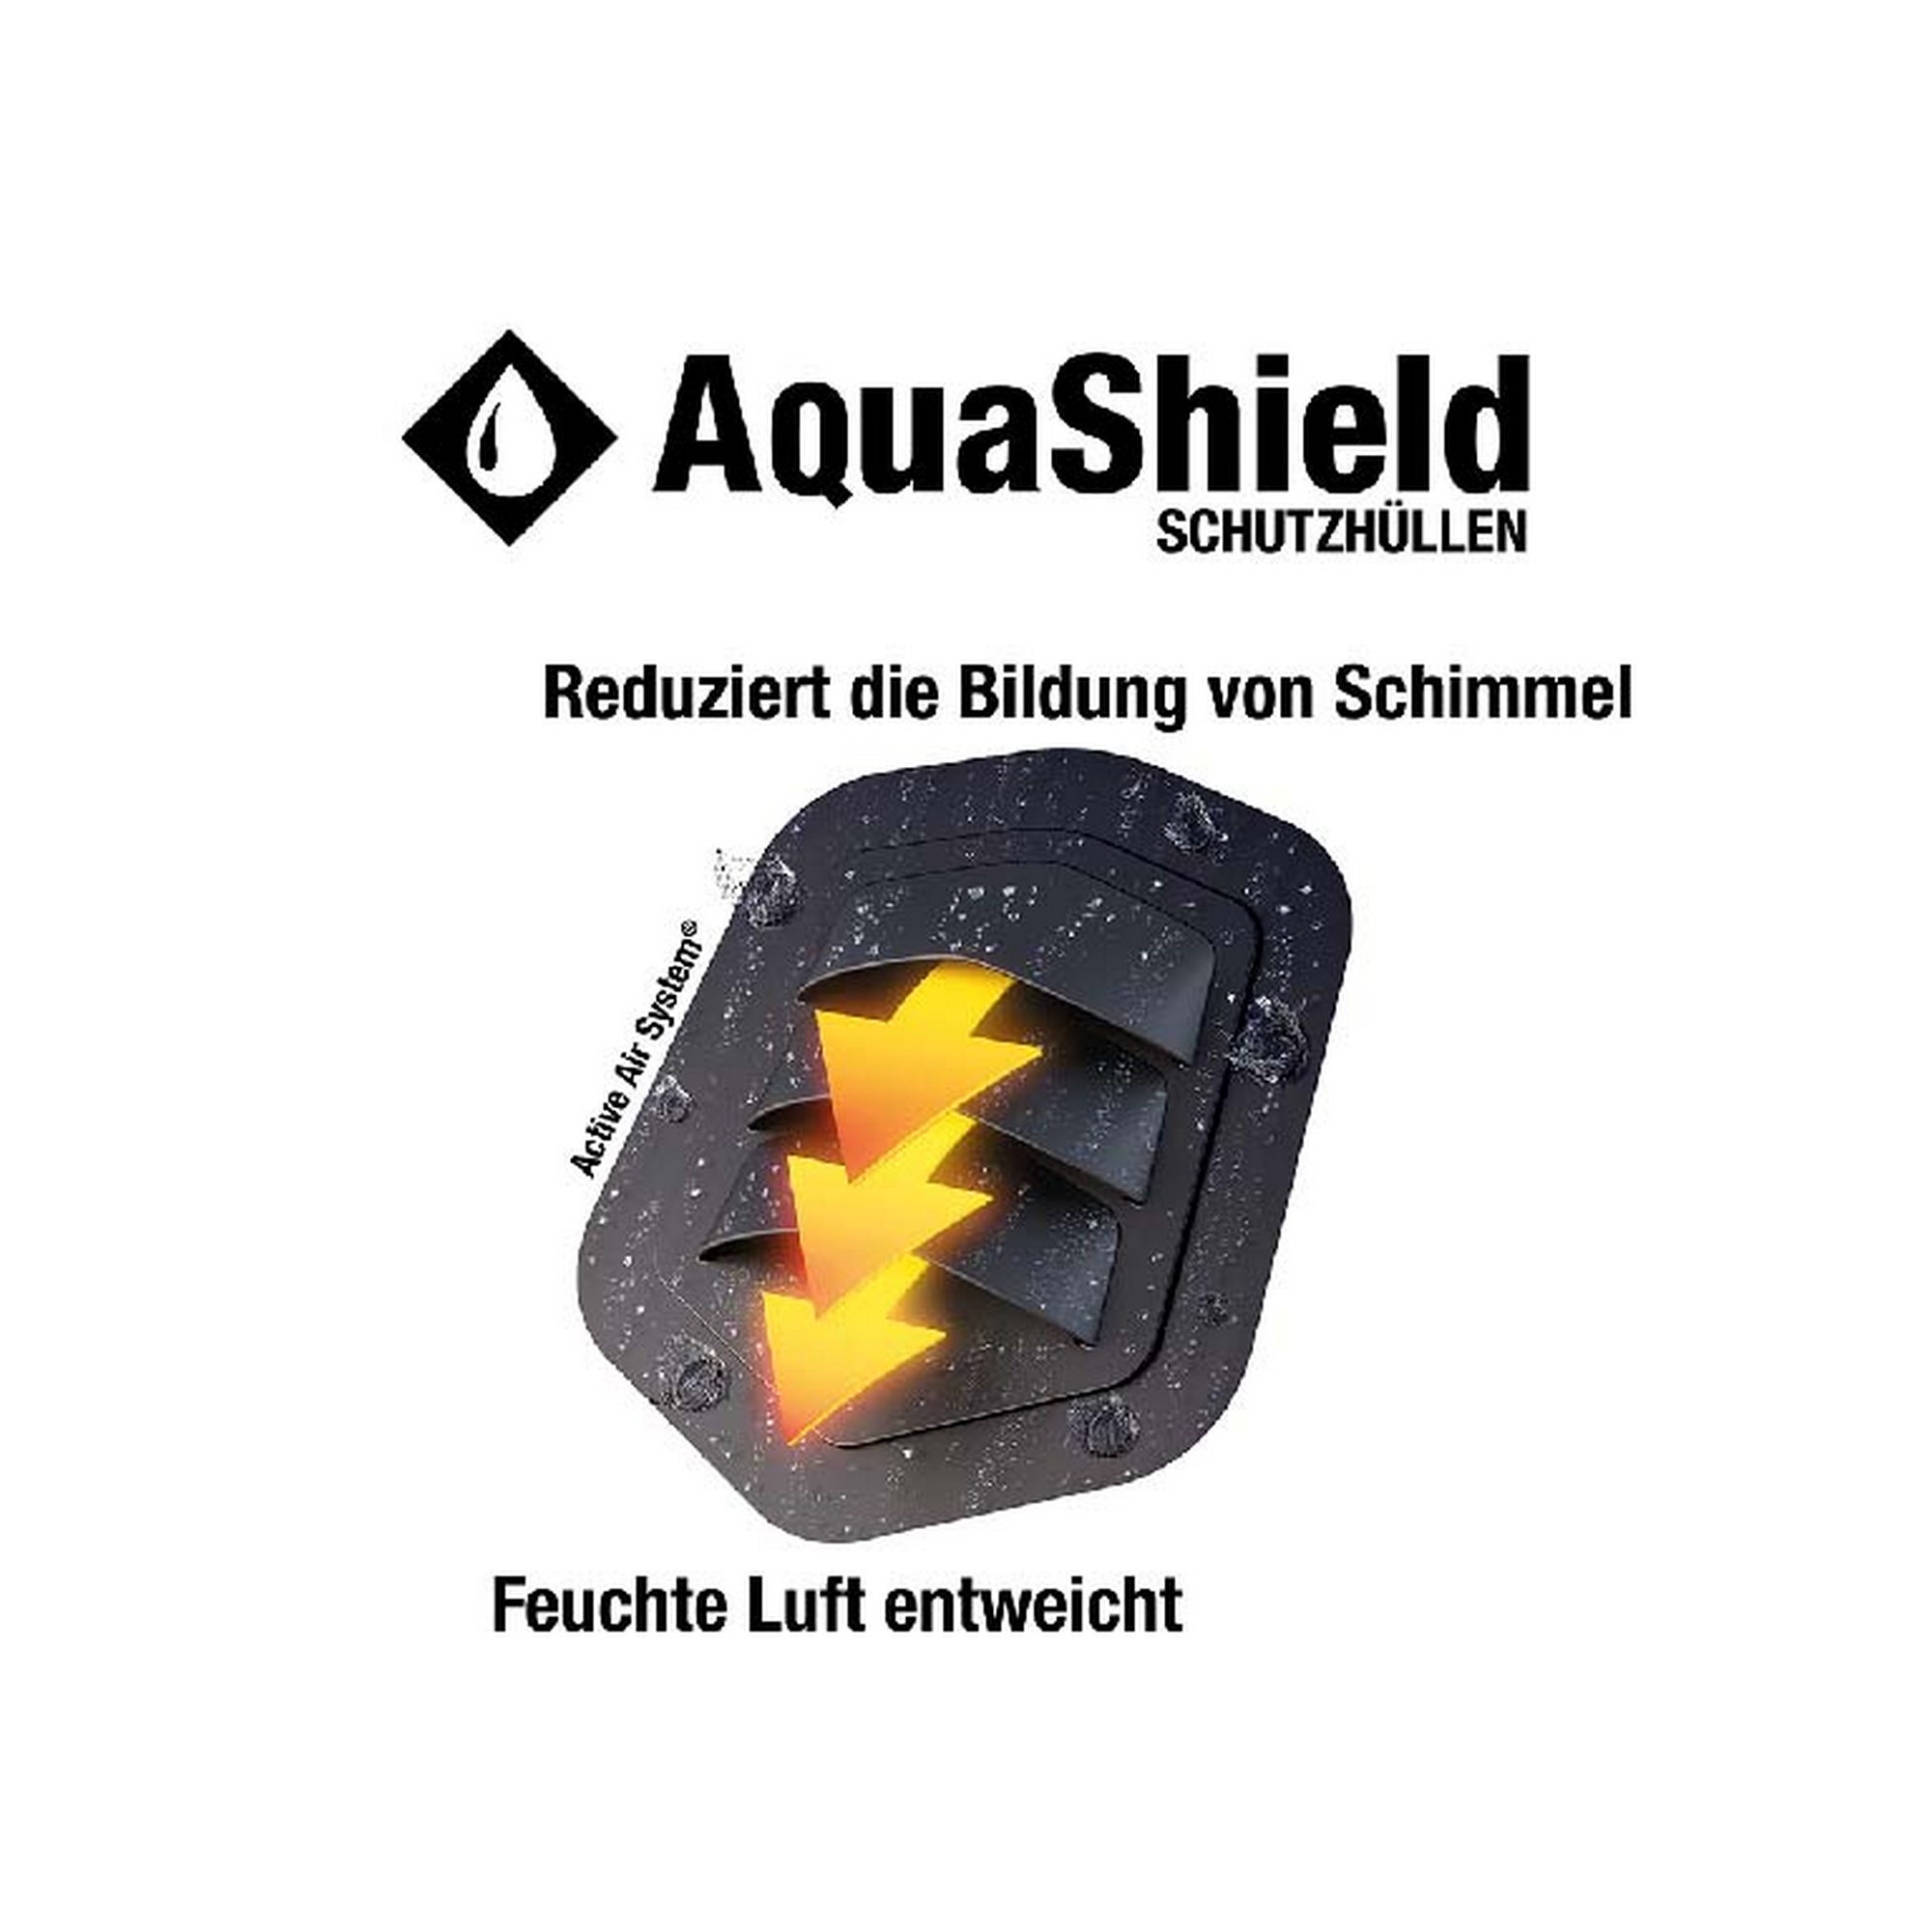 Bankhülle 'AquaShield' für 2-Sitzer 130 x 75 x 65 cm + product picture